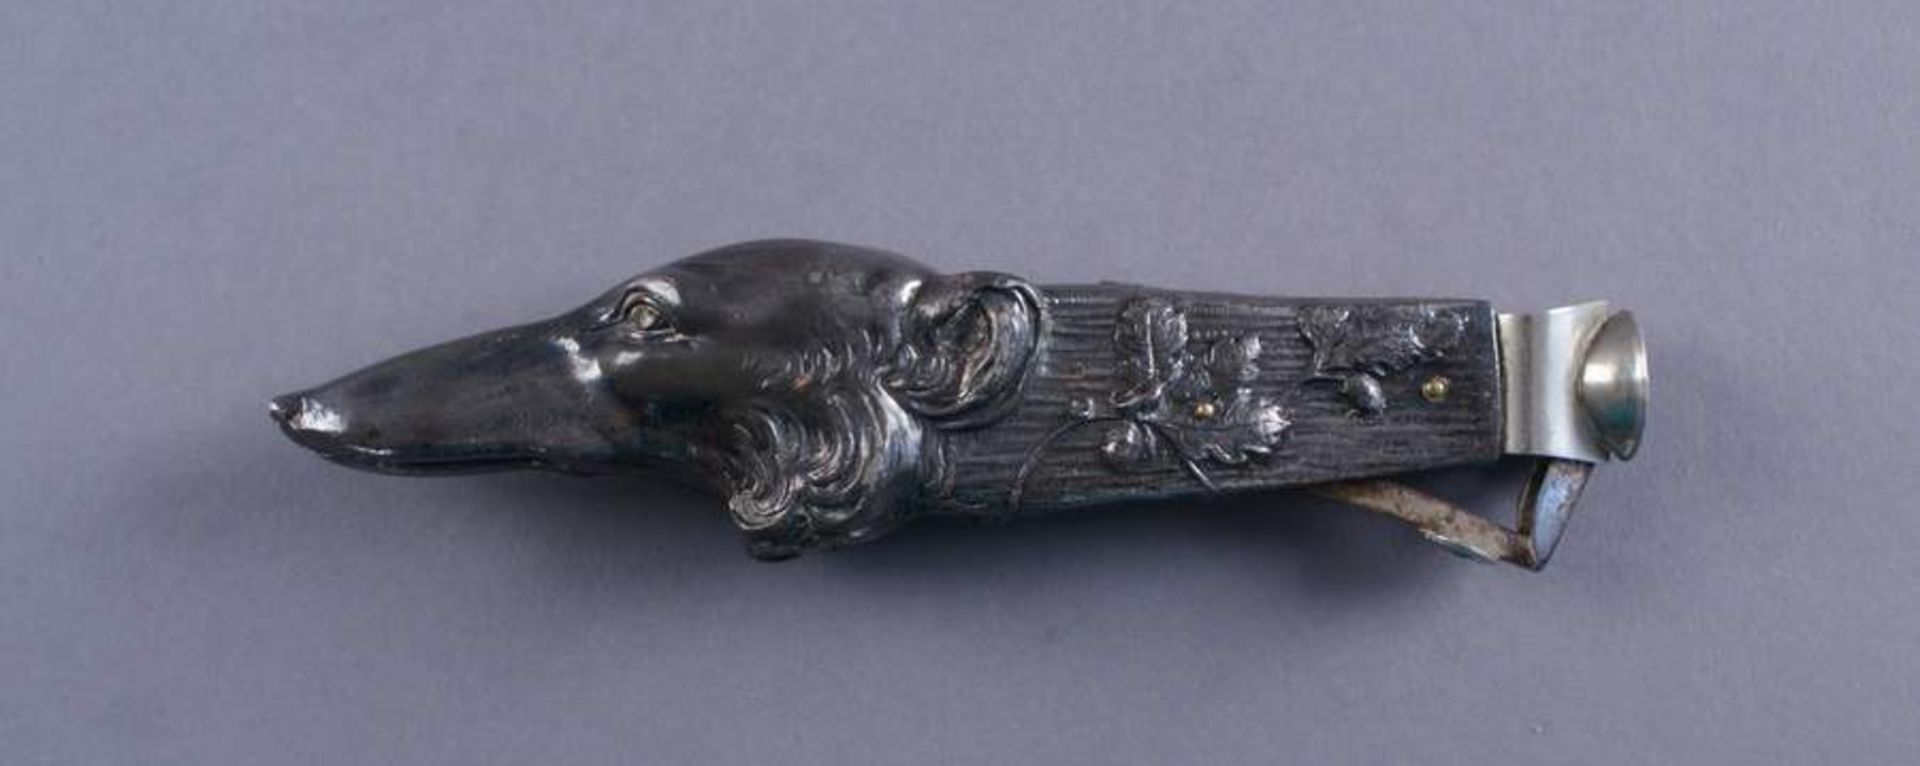 ZIGARRENSCHNEIDER 19. JH, in Form eines Hundekopfes, L 14,5 cm